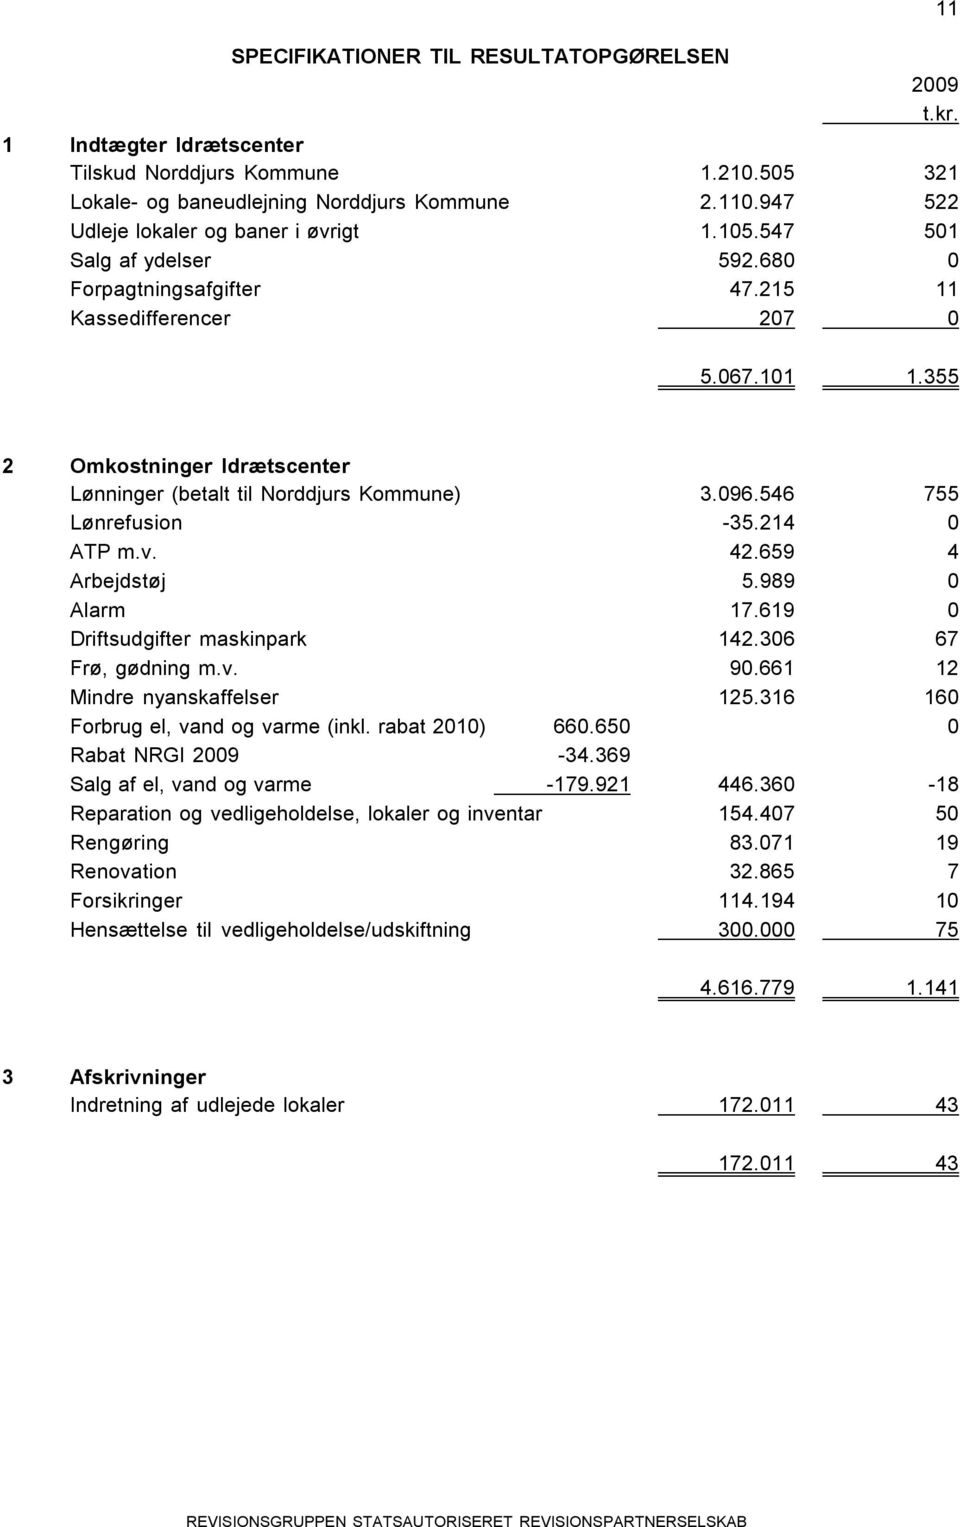 355 2 Omkostninger Idrætscenter Lønninger (betalt til Norddjurs Kommune) 3.096.546 755 Lønrefusion -35.214 0 ATP m.v. 42.659 4 Arbejdstøj 5.989 0 Alarm 17.619 0 Driftsudgifter maskinpark 142.